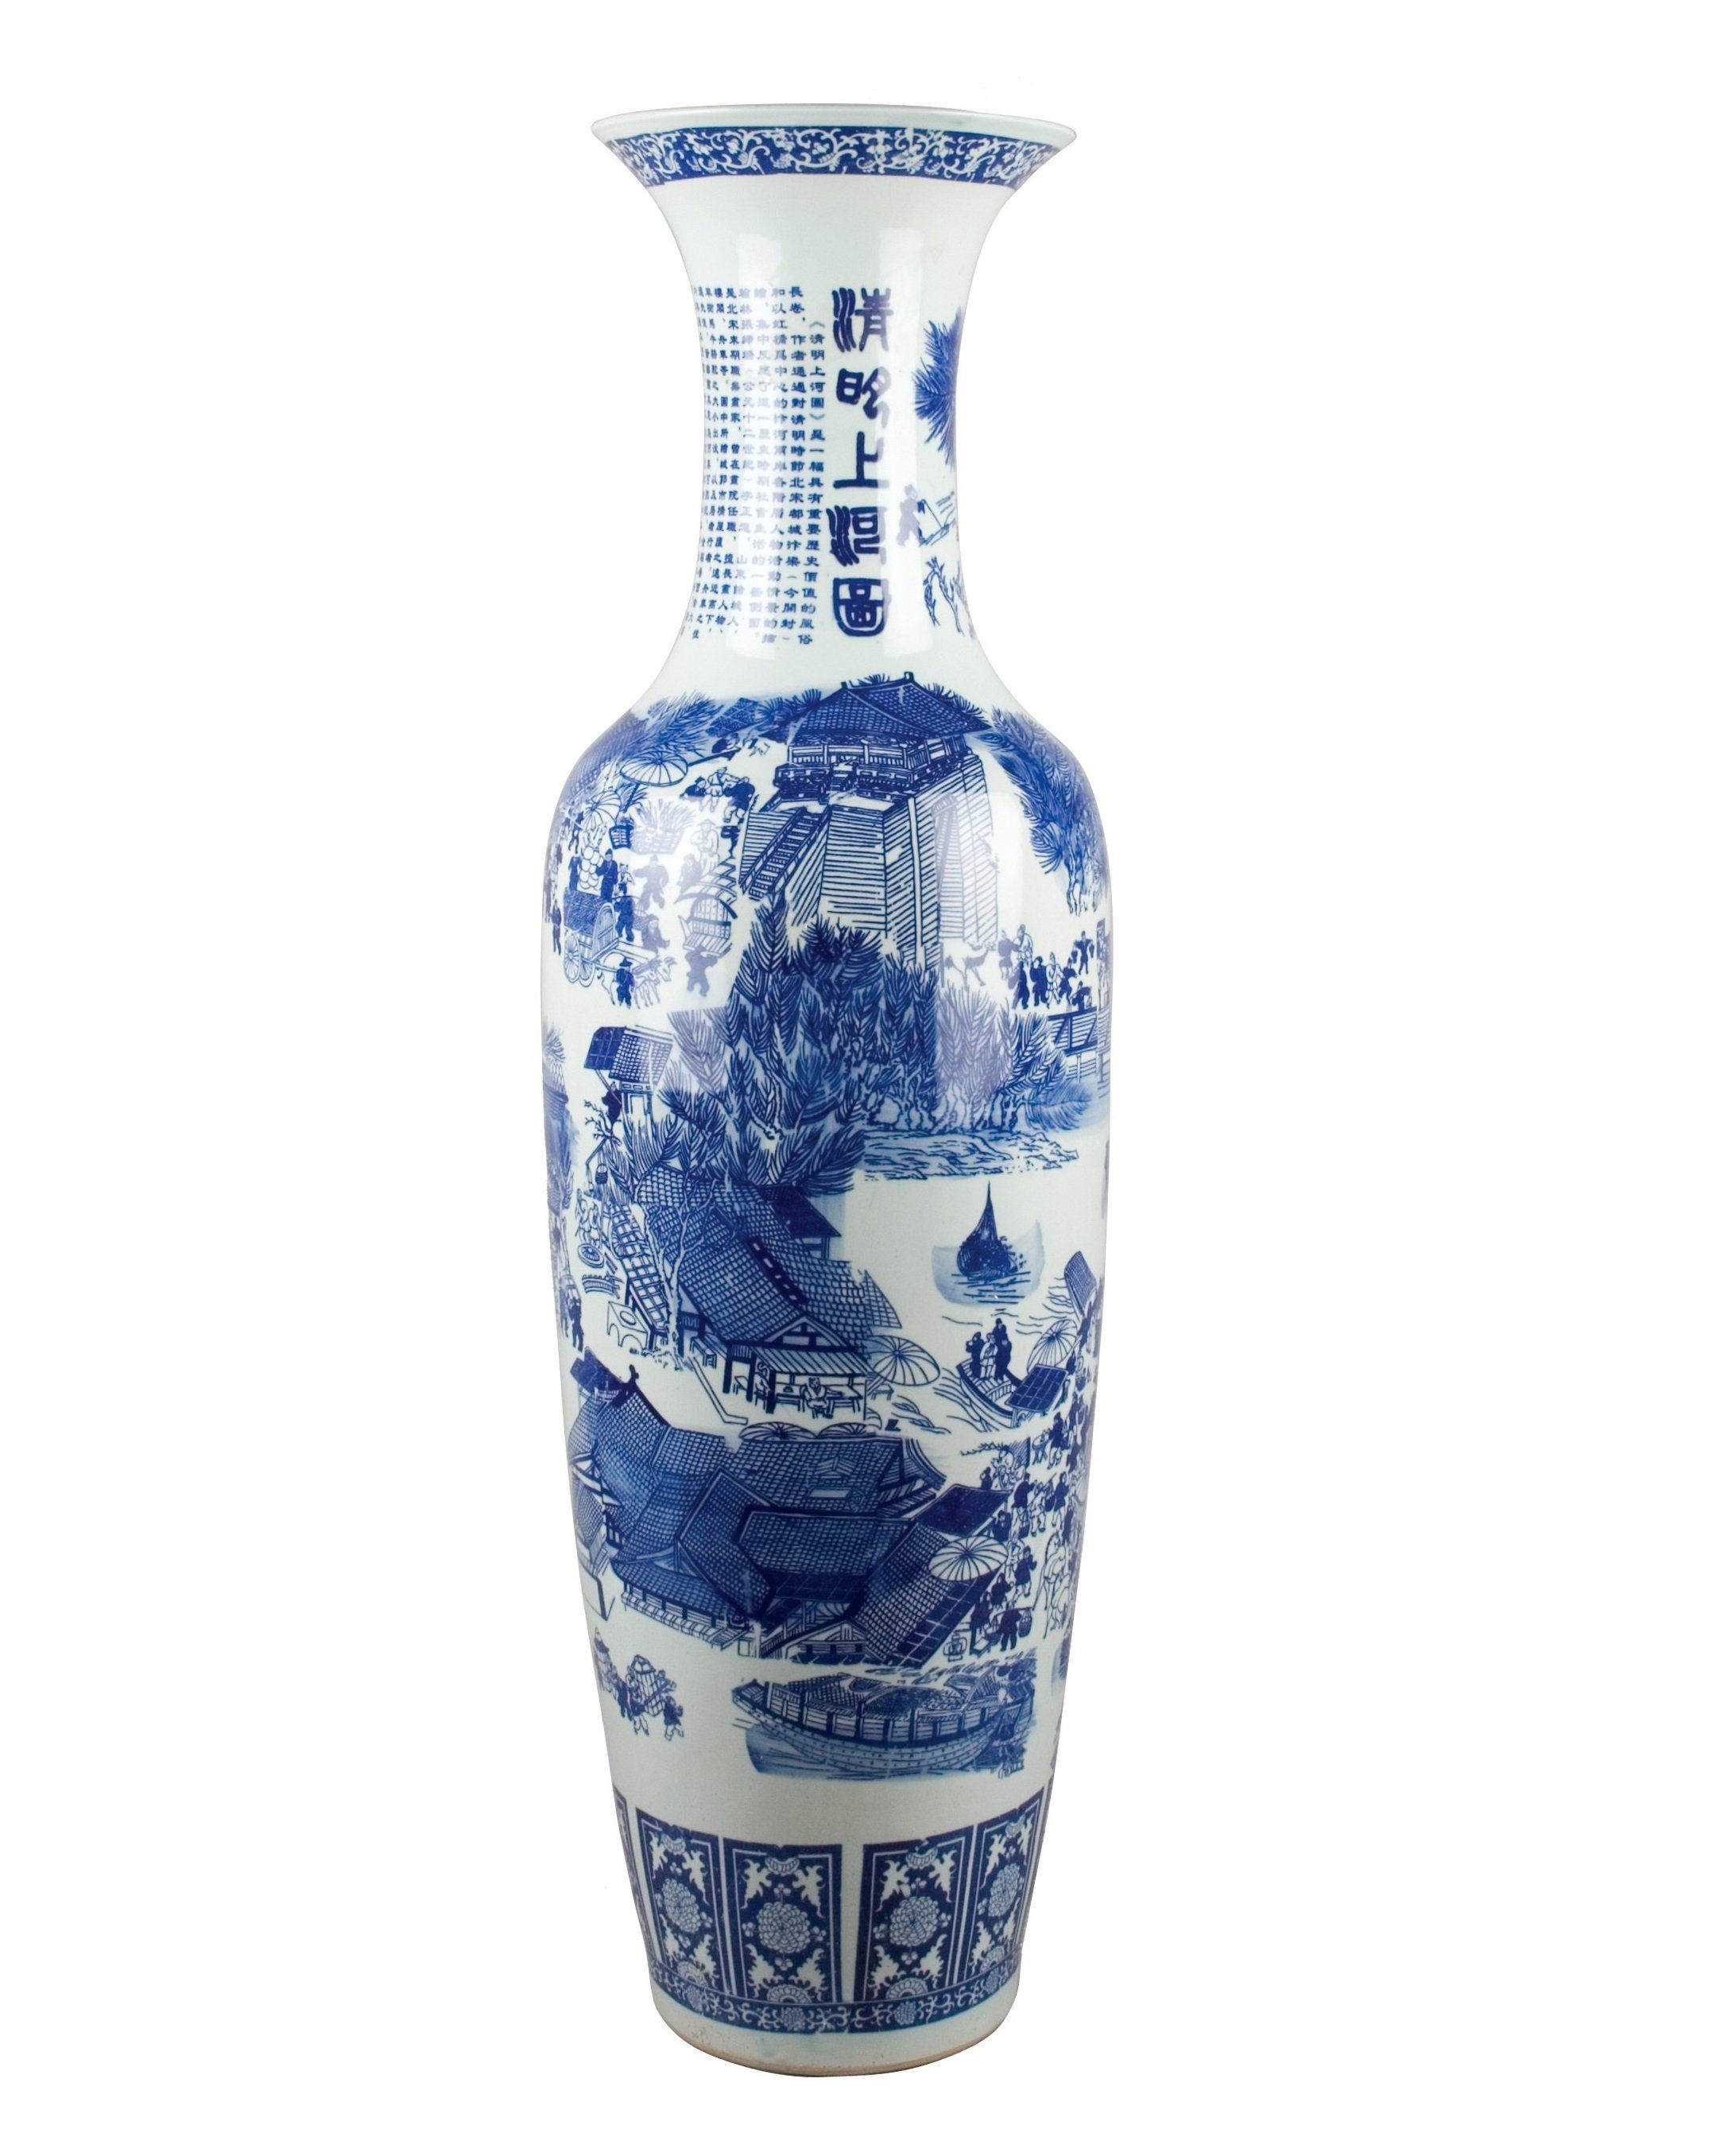 lovecup blue white 48tall porcelain vase l216